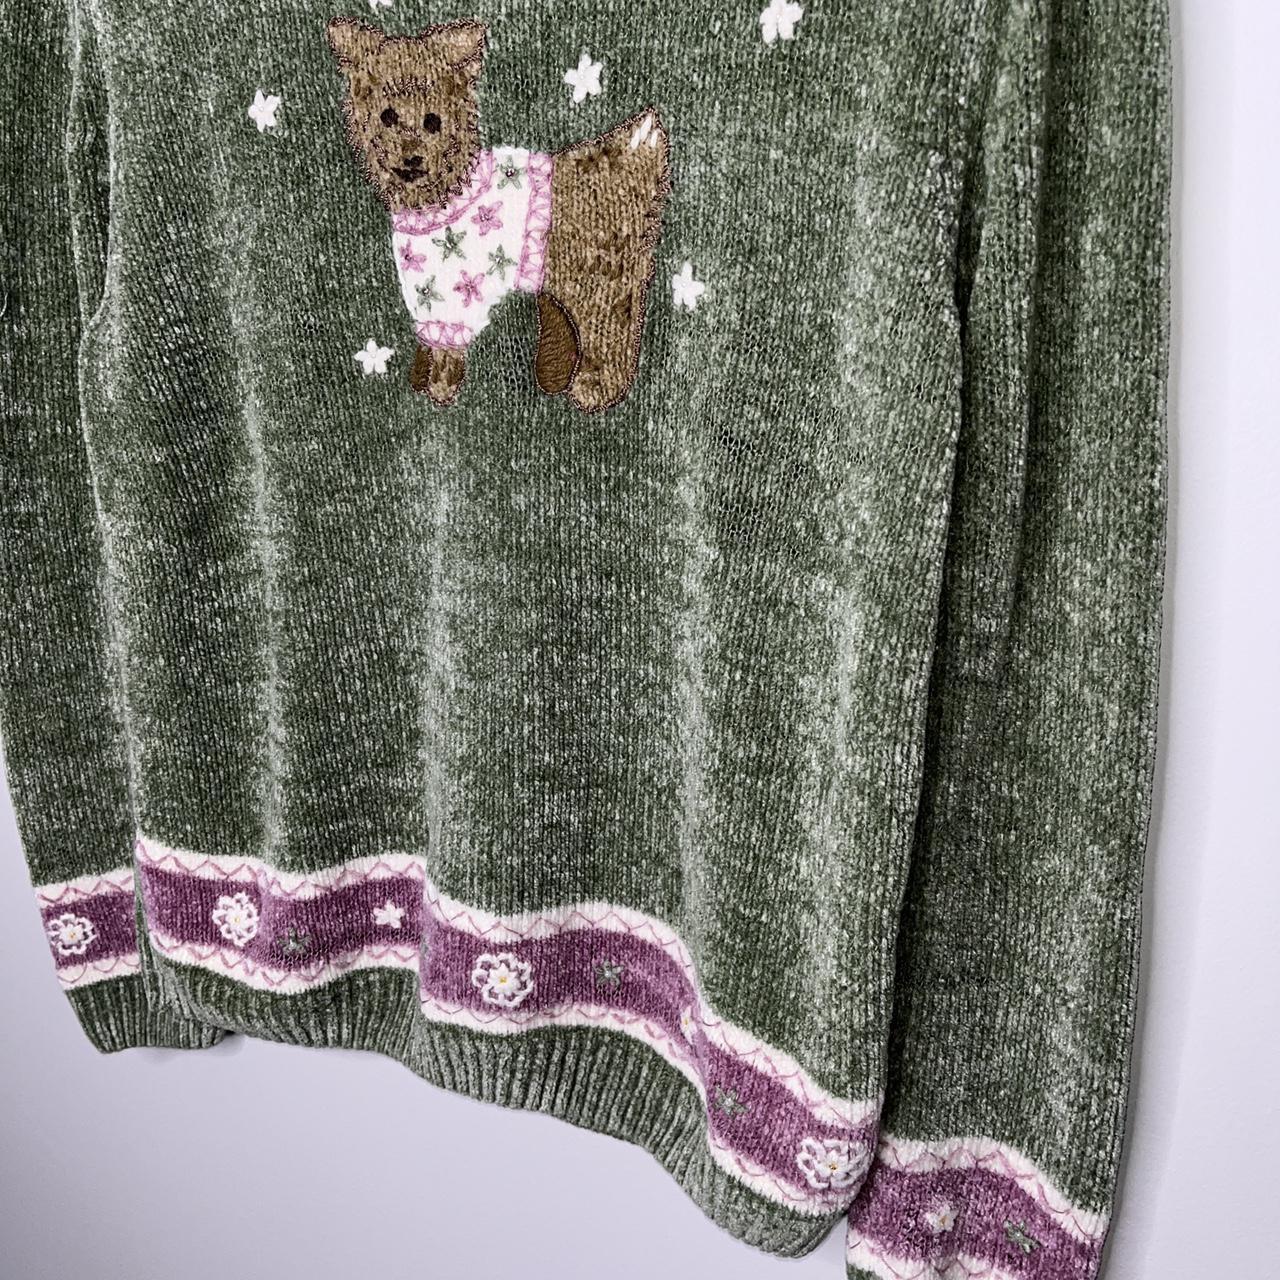 Product Image 2 - Dog Sweater 

•Women’s Vintage Dog